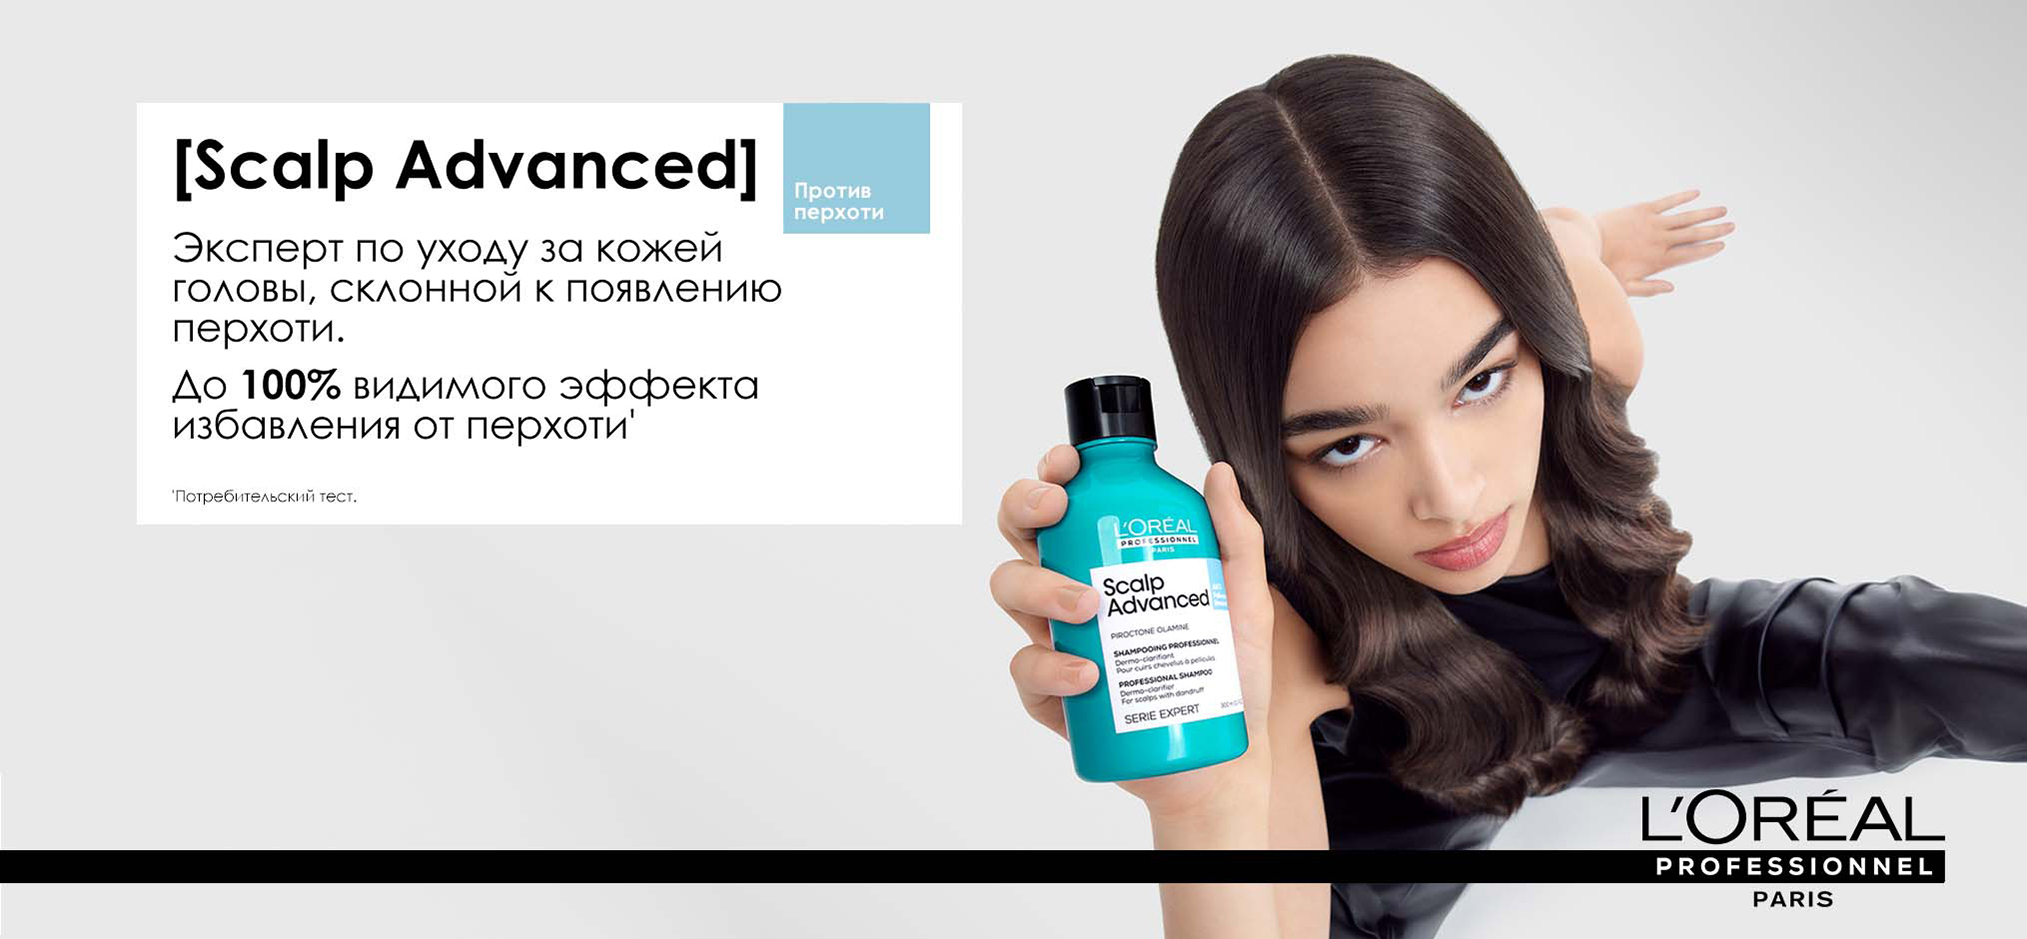 Профессиональный дерморегулирующий шампунь против перхоти - L'Oreal Professionnel Scalp Advanced Anti Dandruff Shampoo